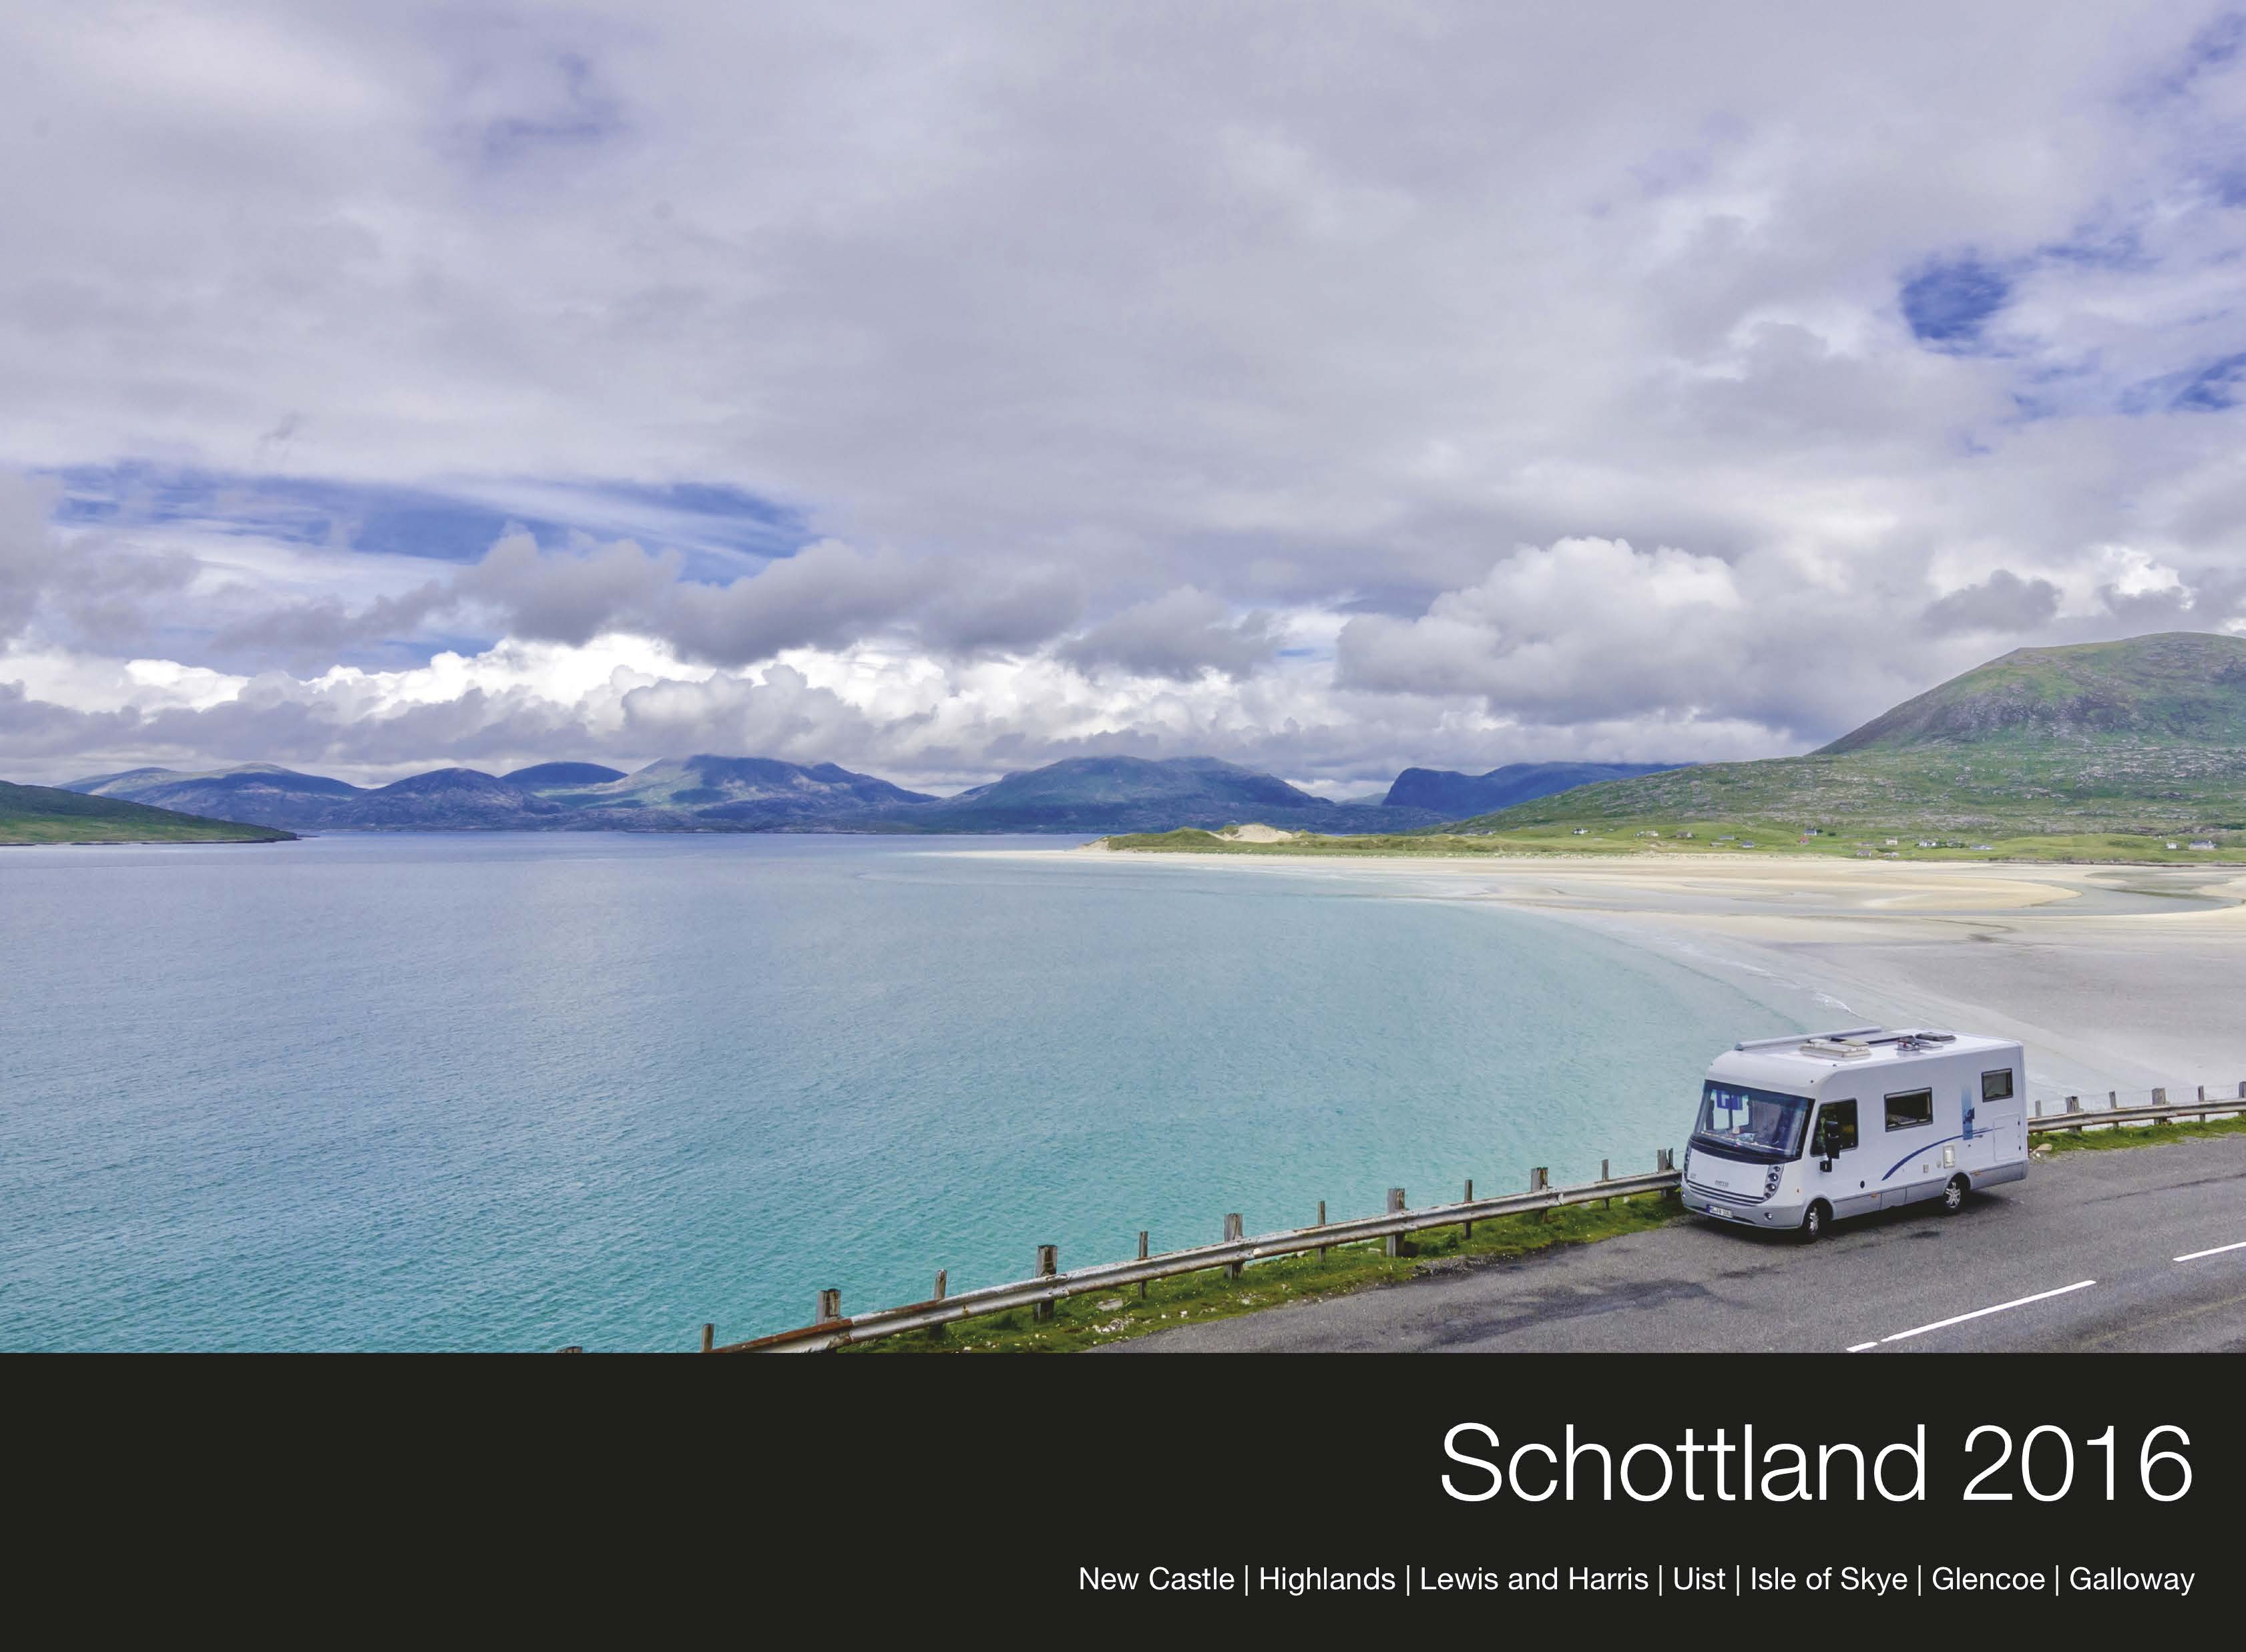 fotobuch schottland seite 01 - Schottland Fotobuch 2016